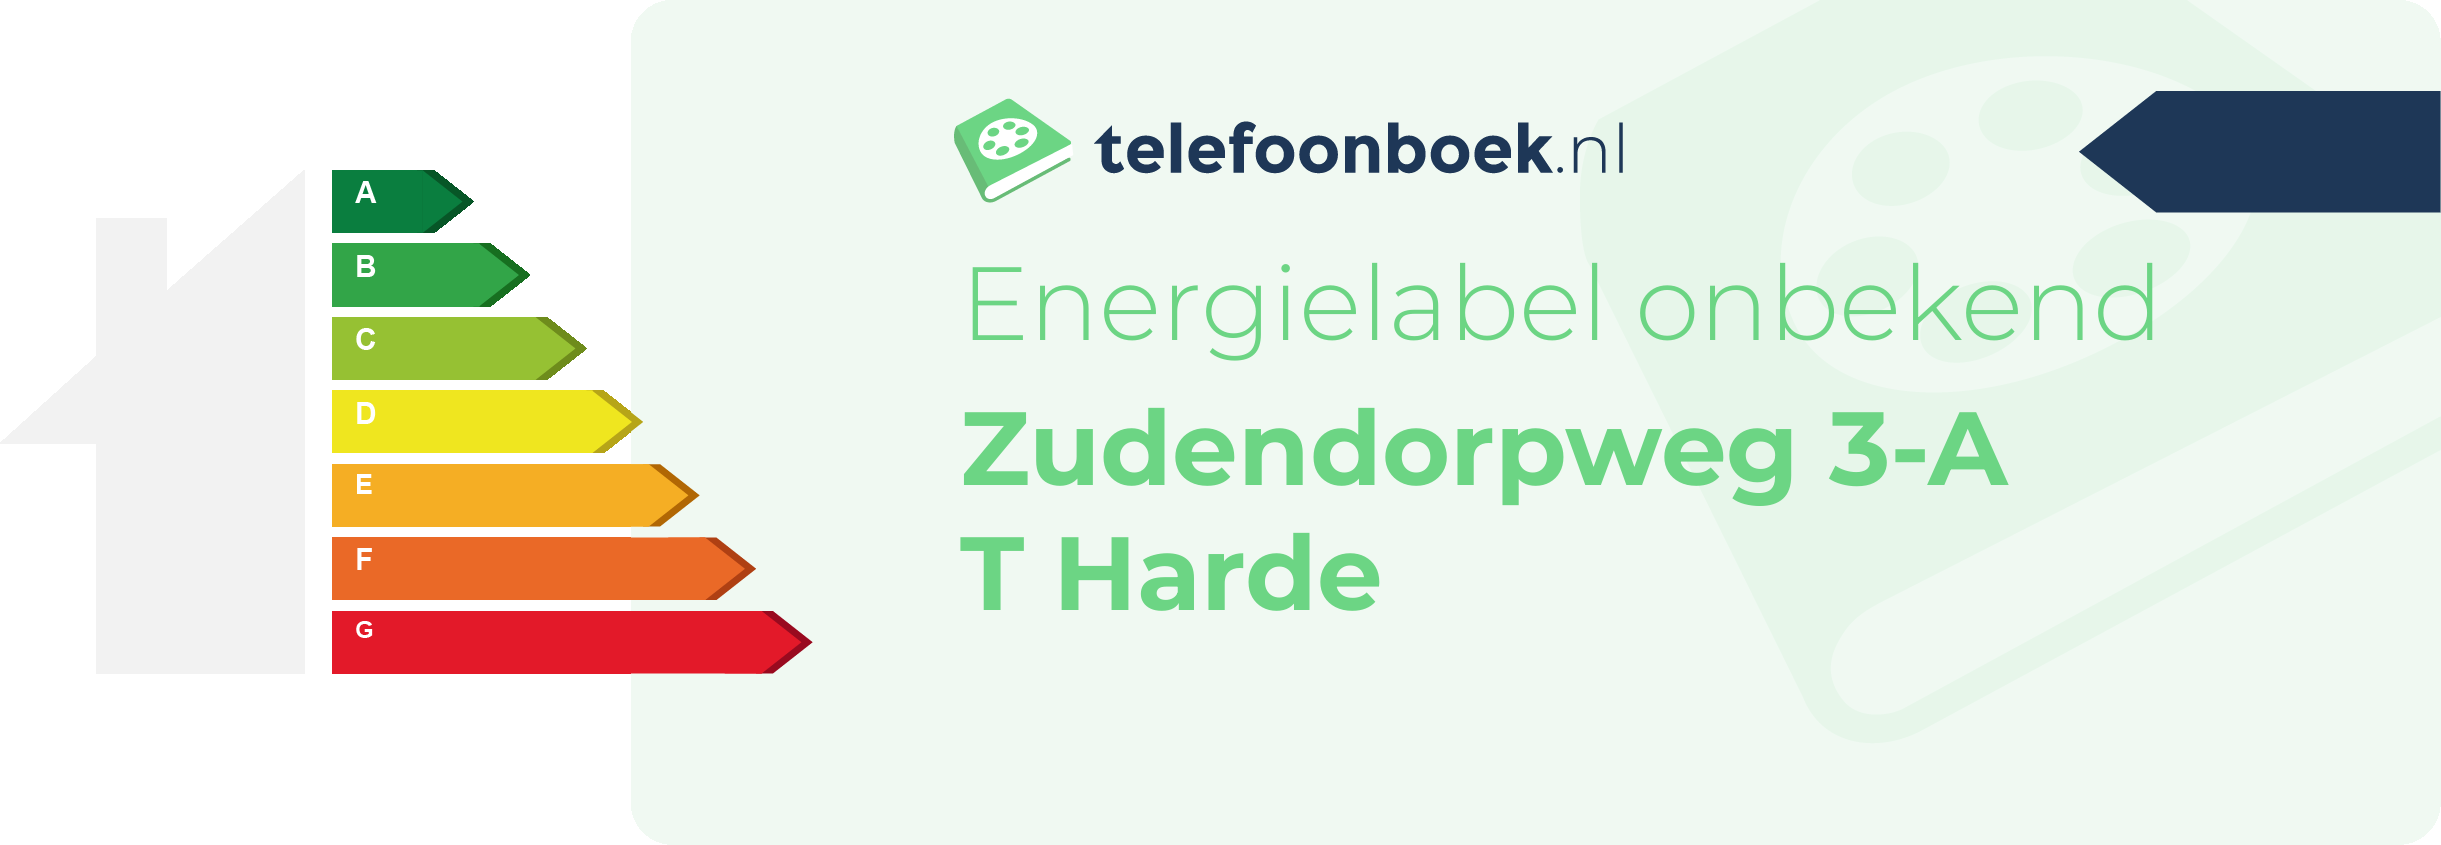 Energielabel Zudendorpweg 3-A T Harde